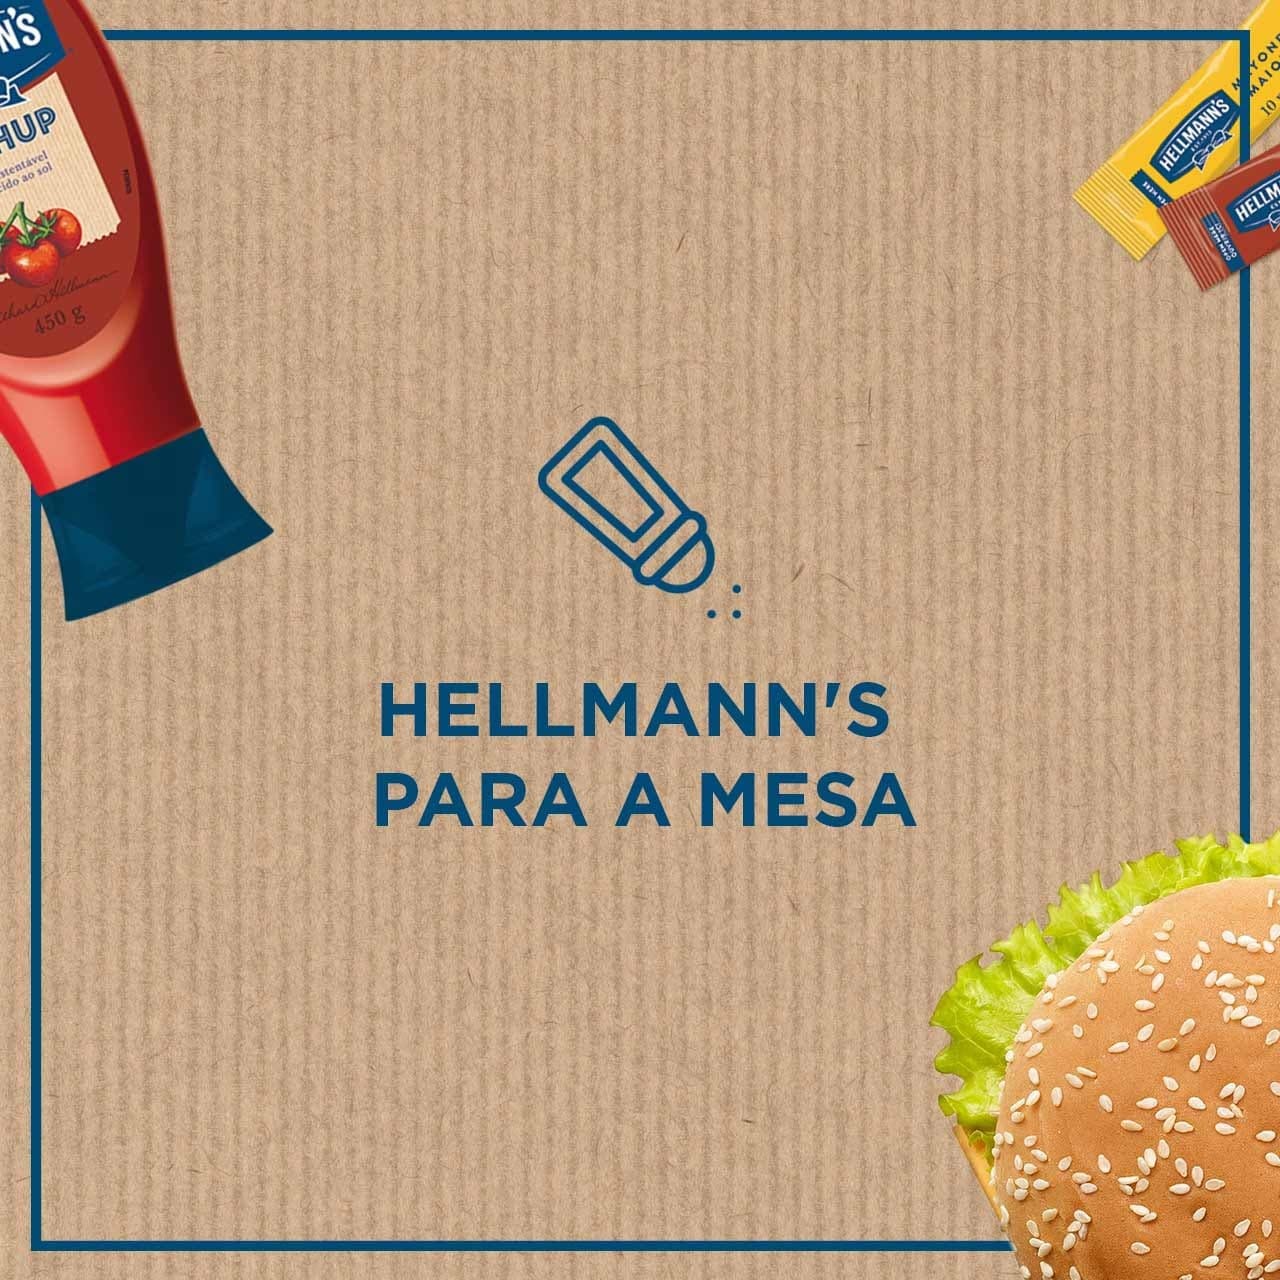 hellmann's para a mesa